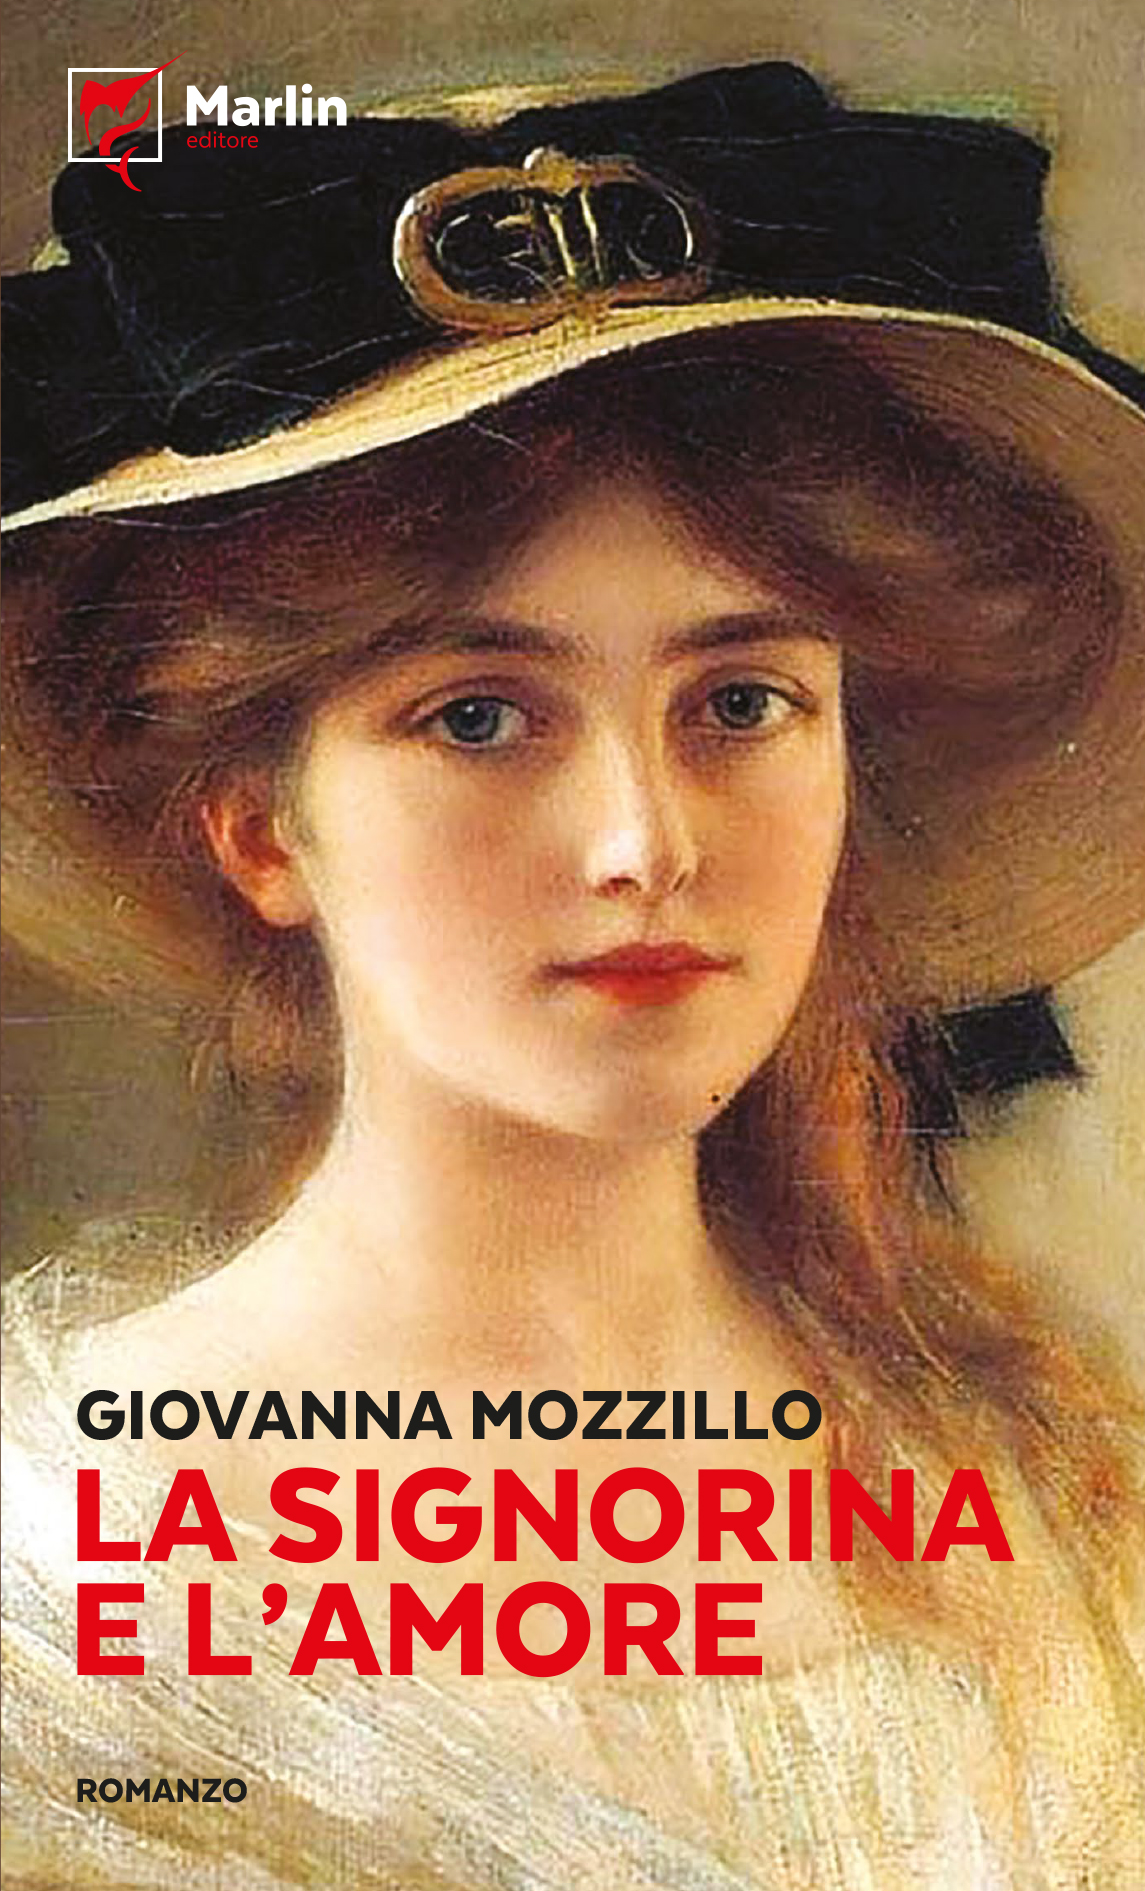 Feltrinelli Napoli, il 23 febbraio presentazione “La signorina e l’amore” di Giovanna Mozzillo